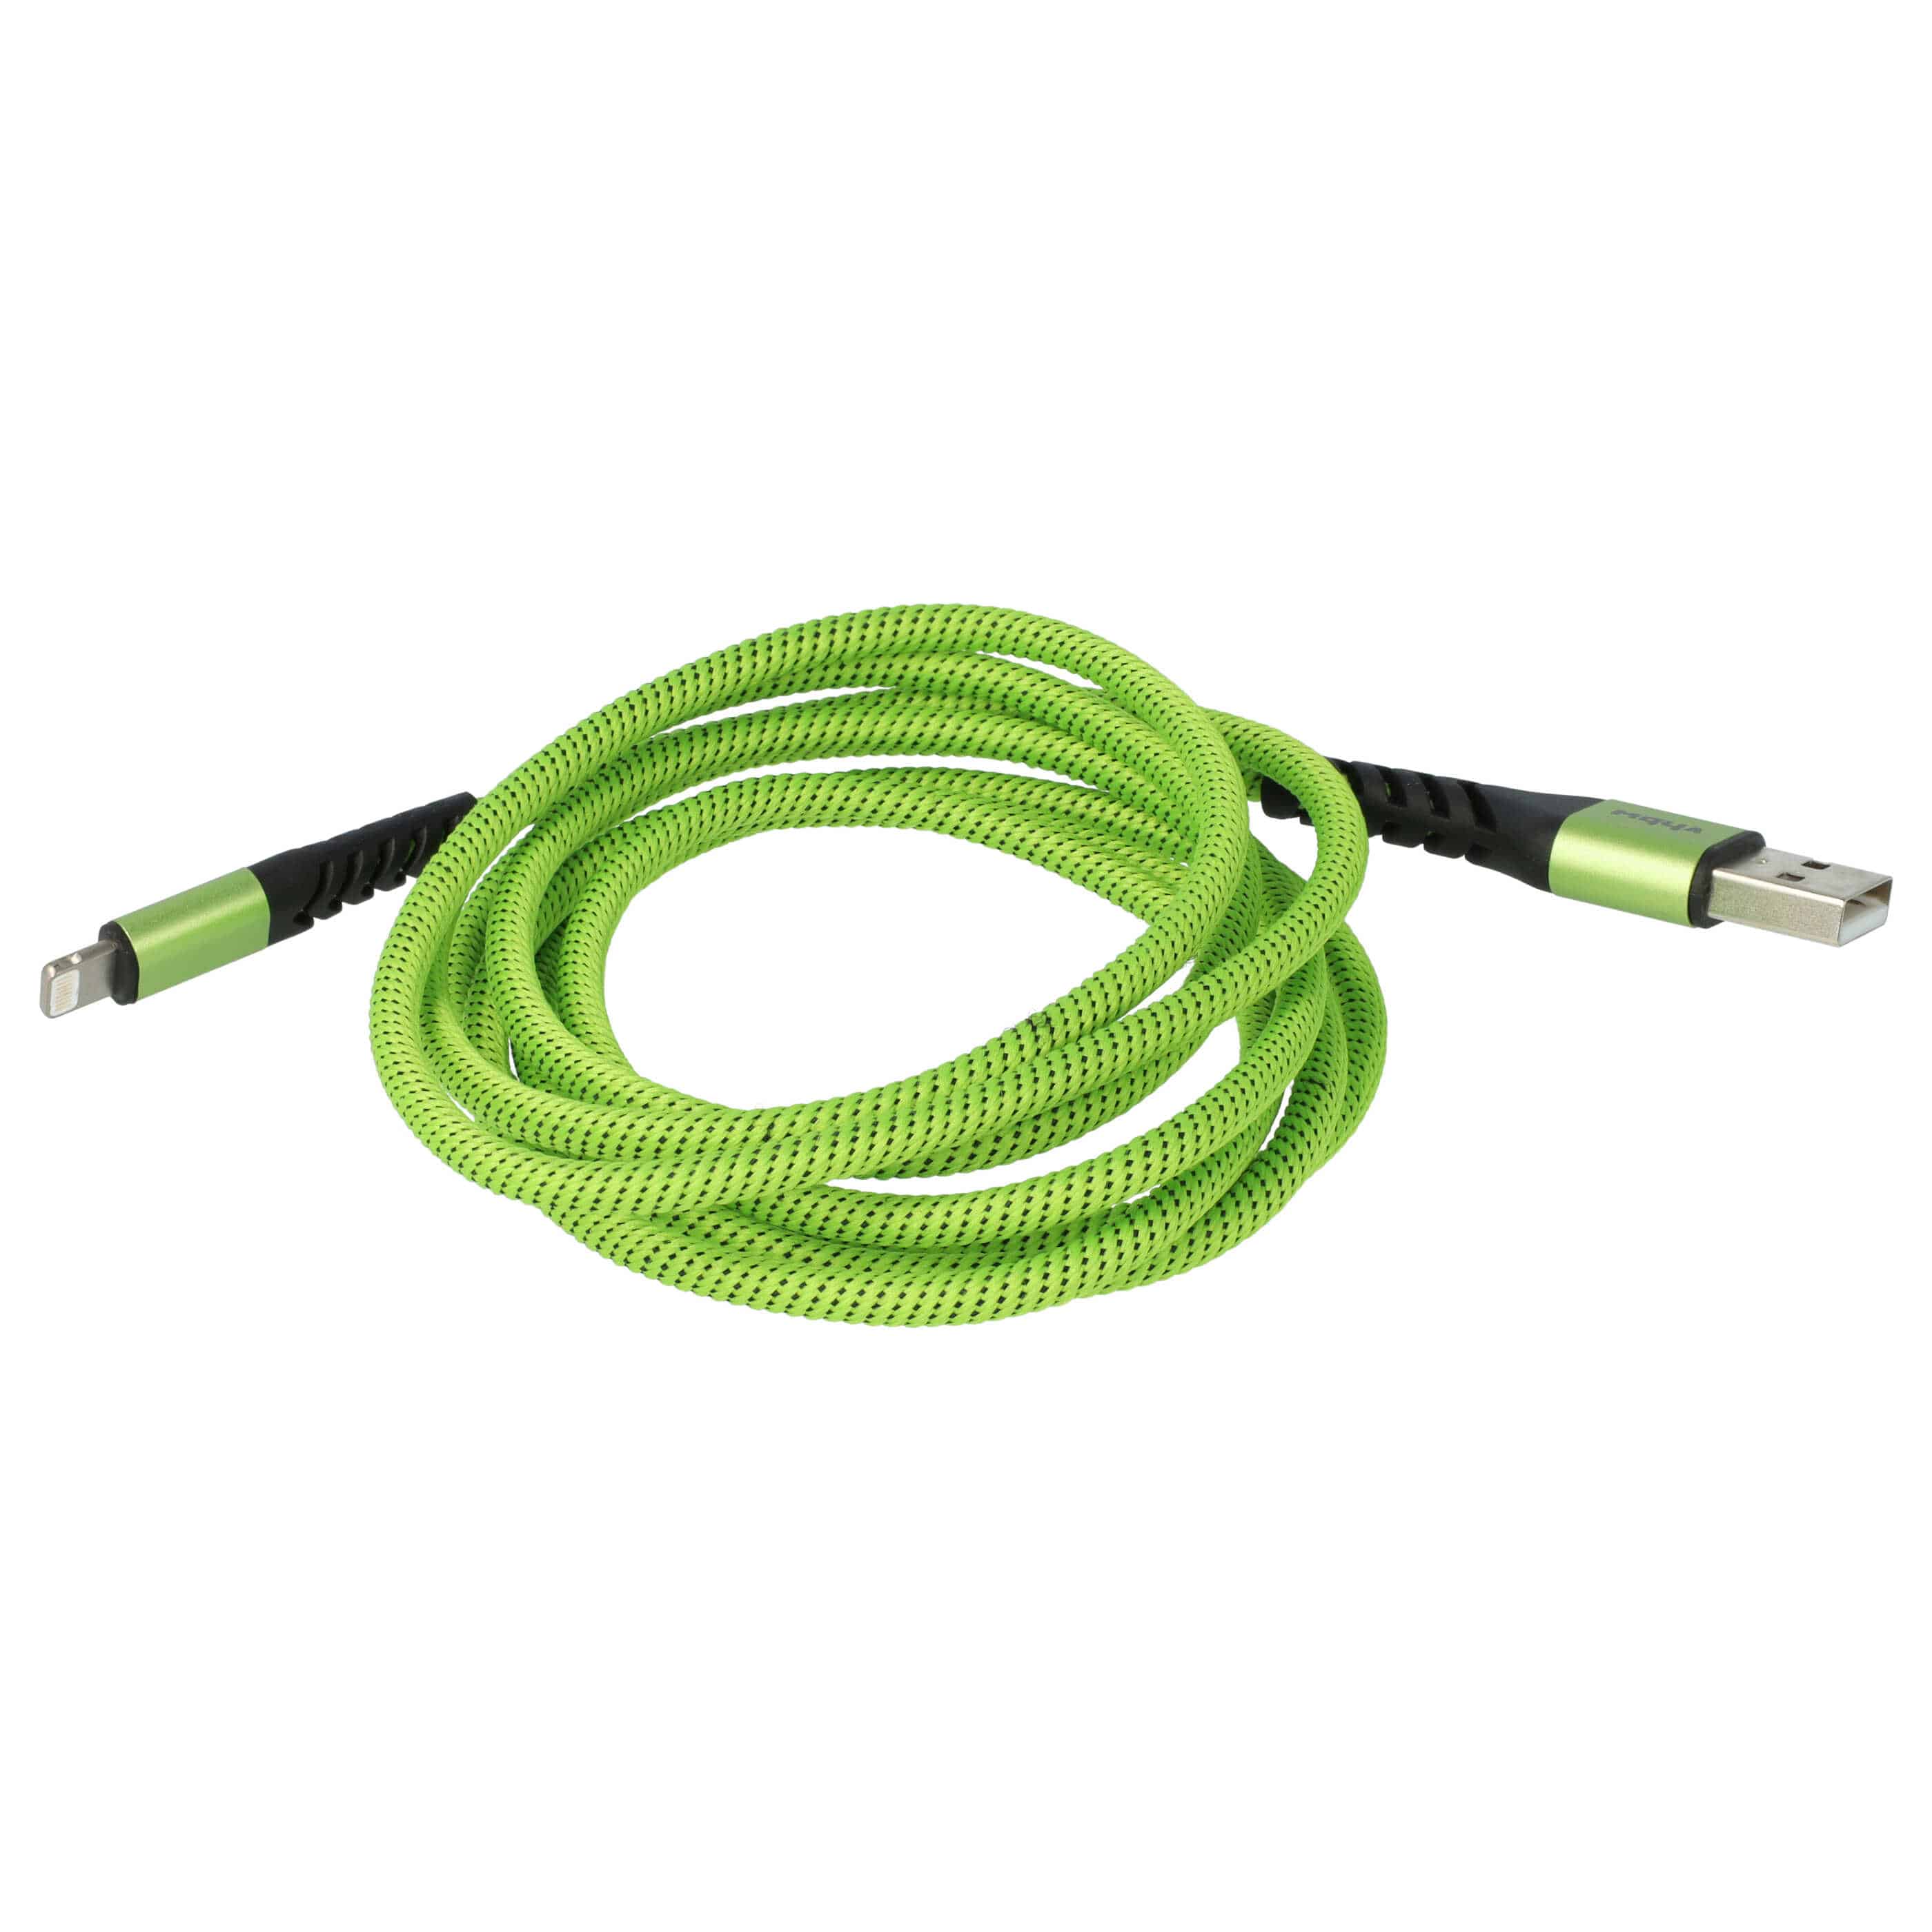 Cavo lightning - USB A per dispositivi Apple iOS - nero / verde, 180cm